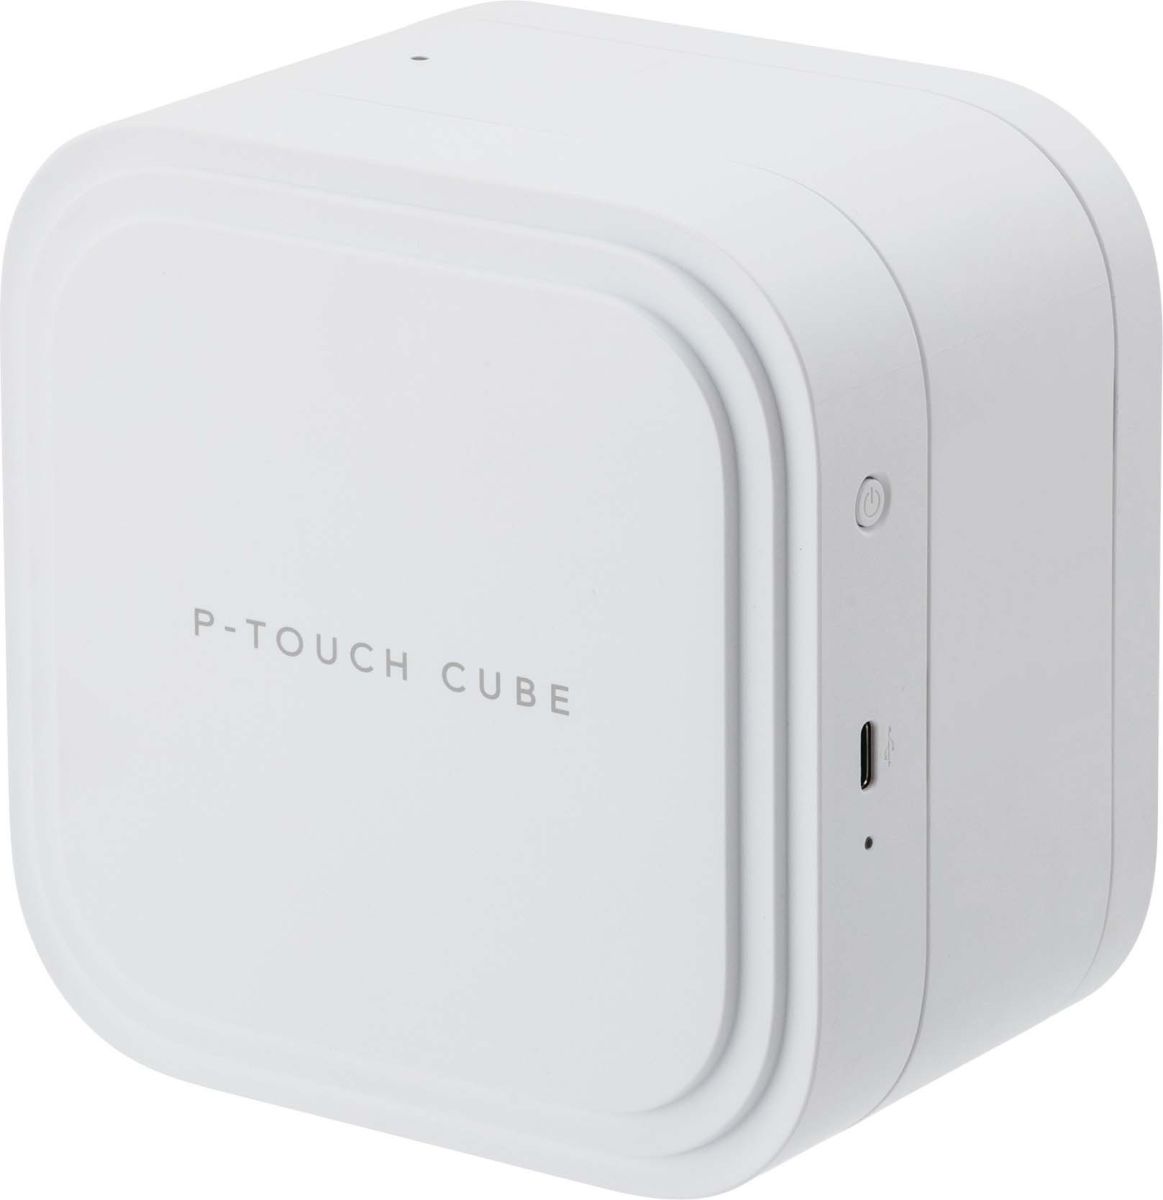 Beschriftungsgerät P-touch CUBE Pro